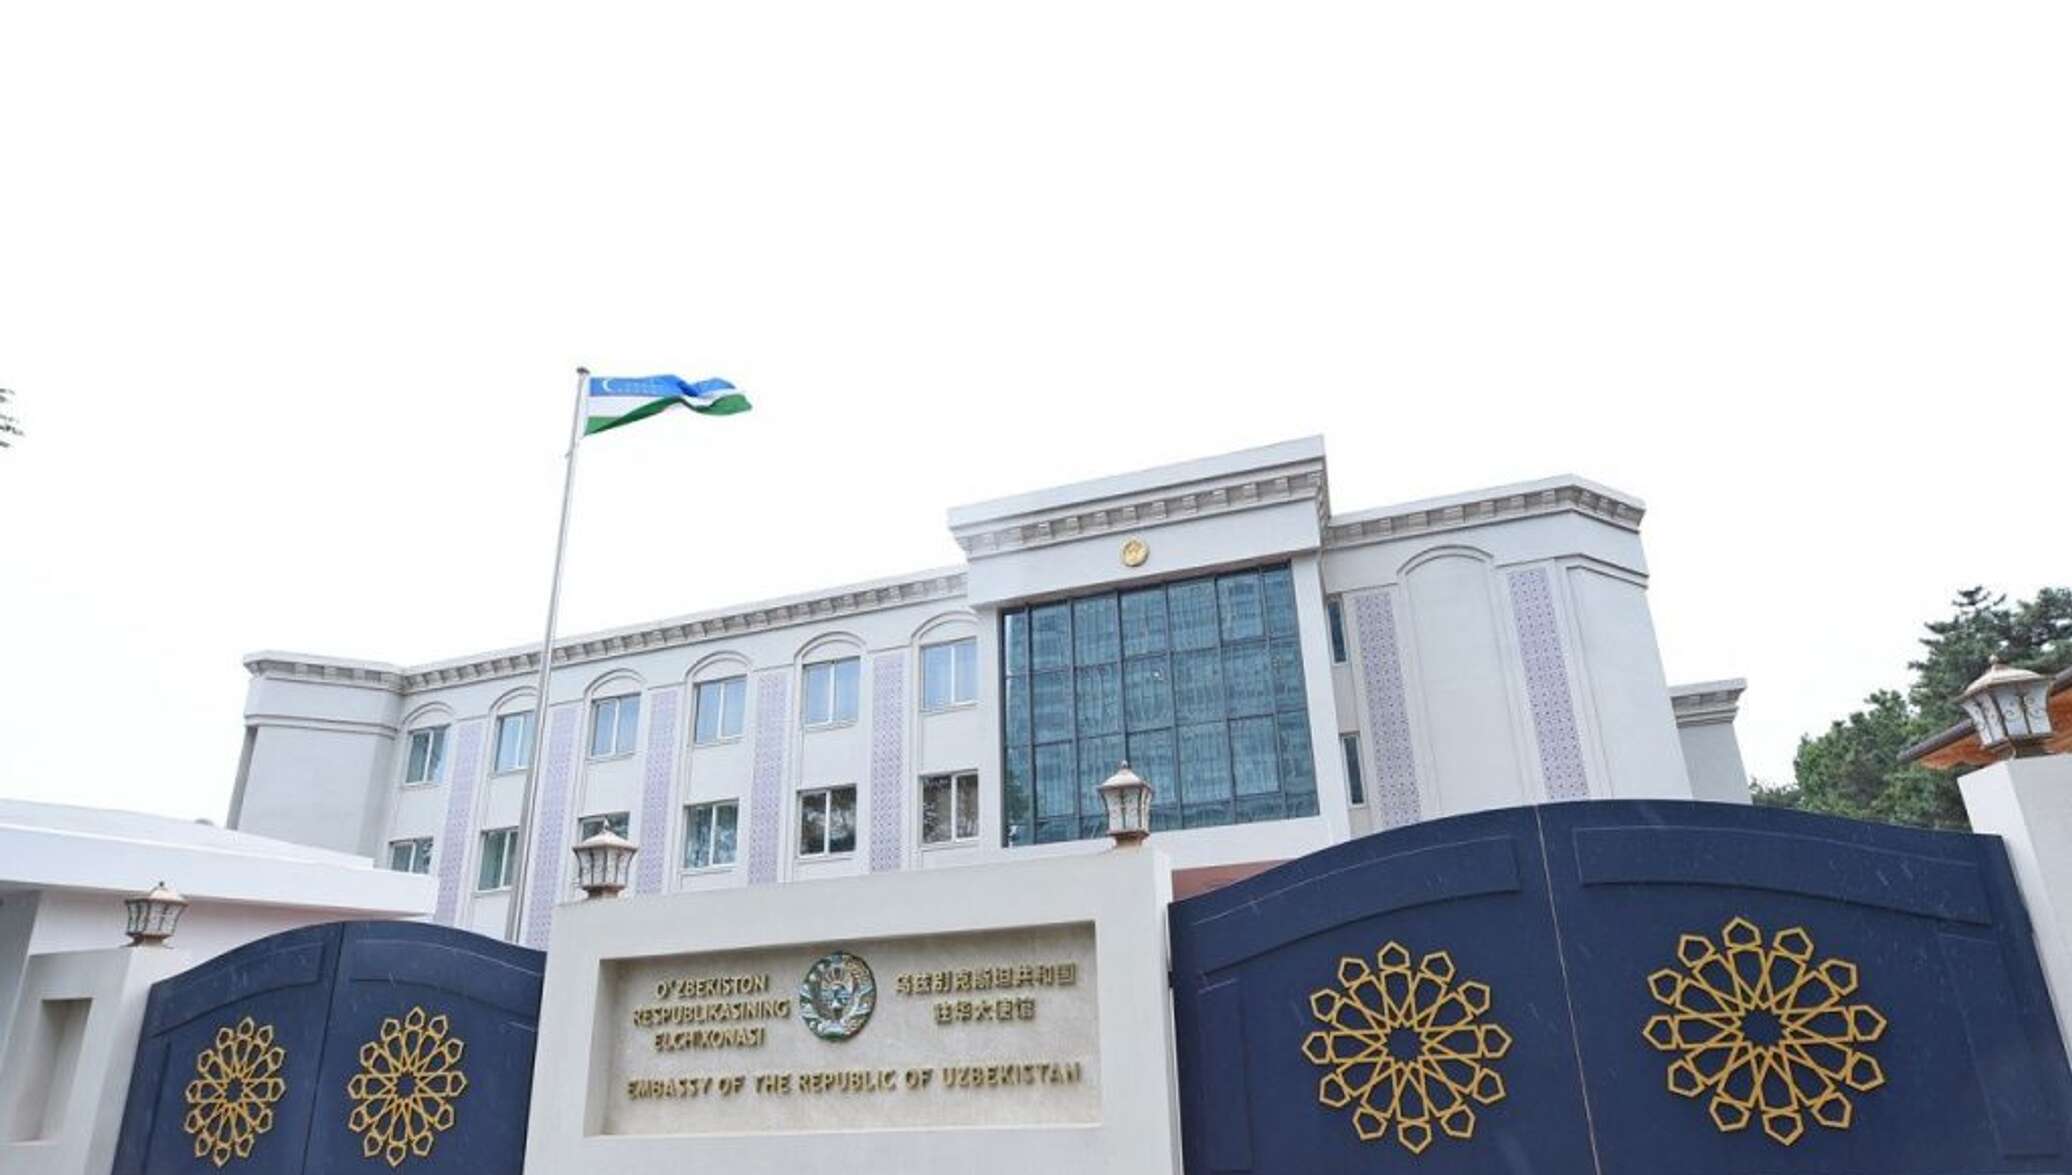 Сайт посольства ташкента. Узбекское посольство в Москве. Посольство КНР В Узбекистане. Здание посольство Казахстана в Узбекистане. Посольство Узбекистана в Ташкенте.